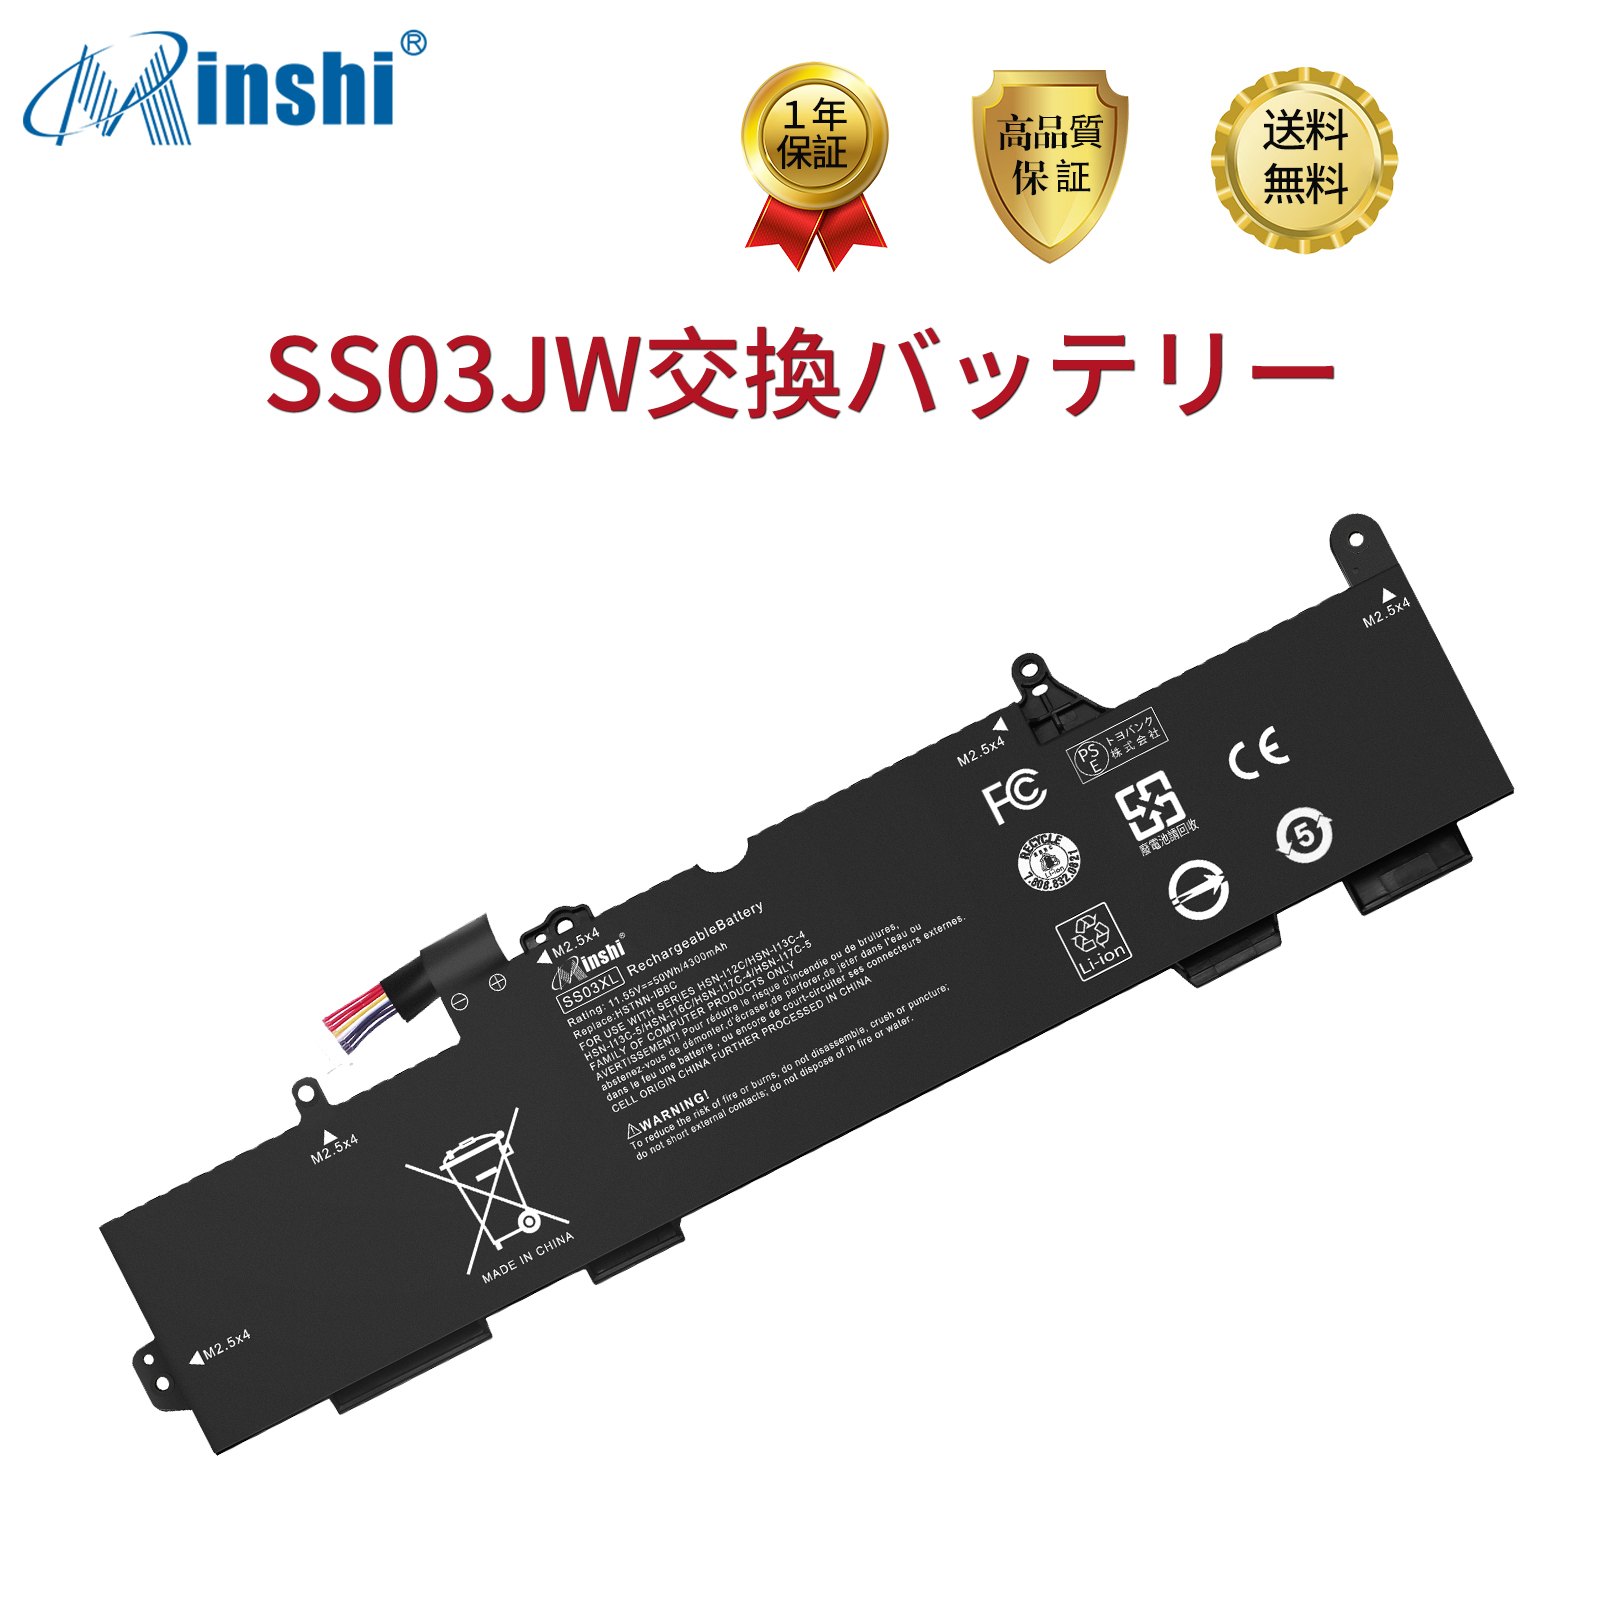 minshi HP エイチピー SS03XL 対応用 HP EliteBook 730 G5 735 G5 740 G5 745 G5 830 G5 G6 840 G5 G6 846 G5 互換バッテリー